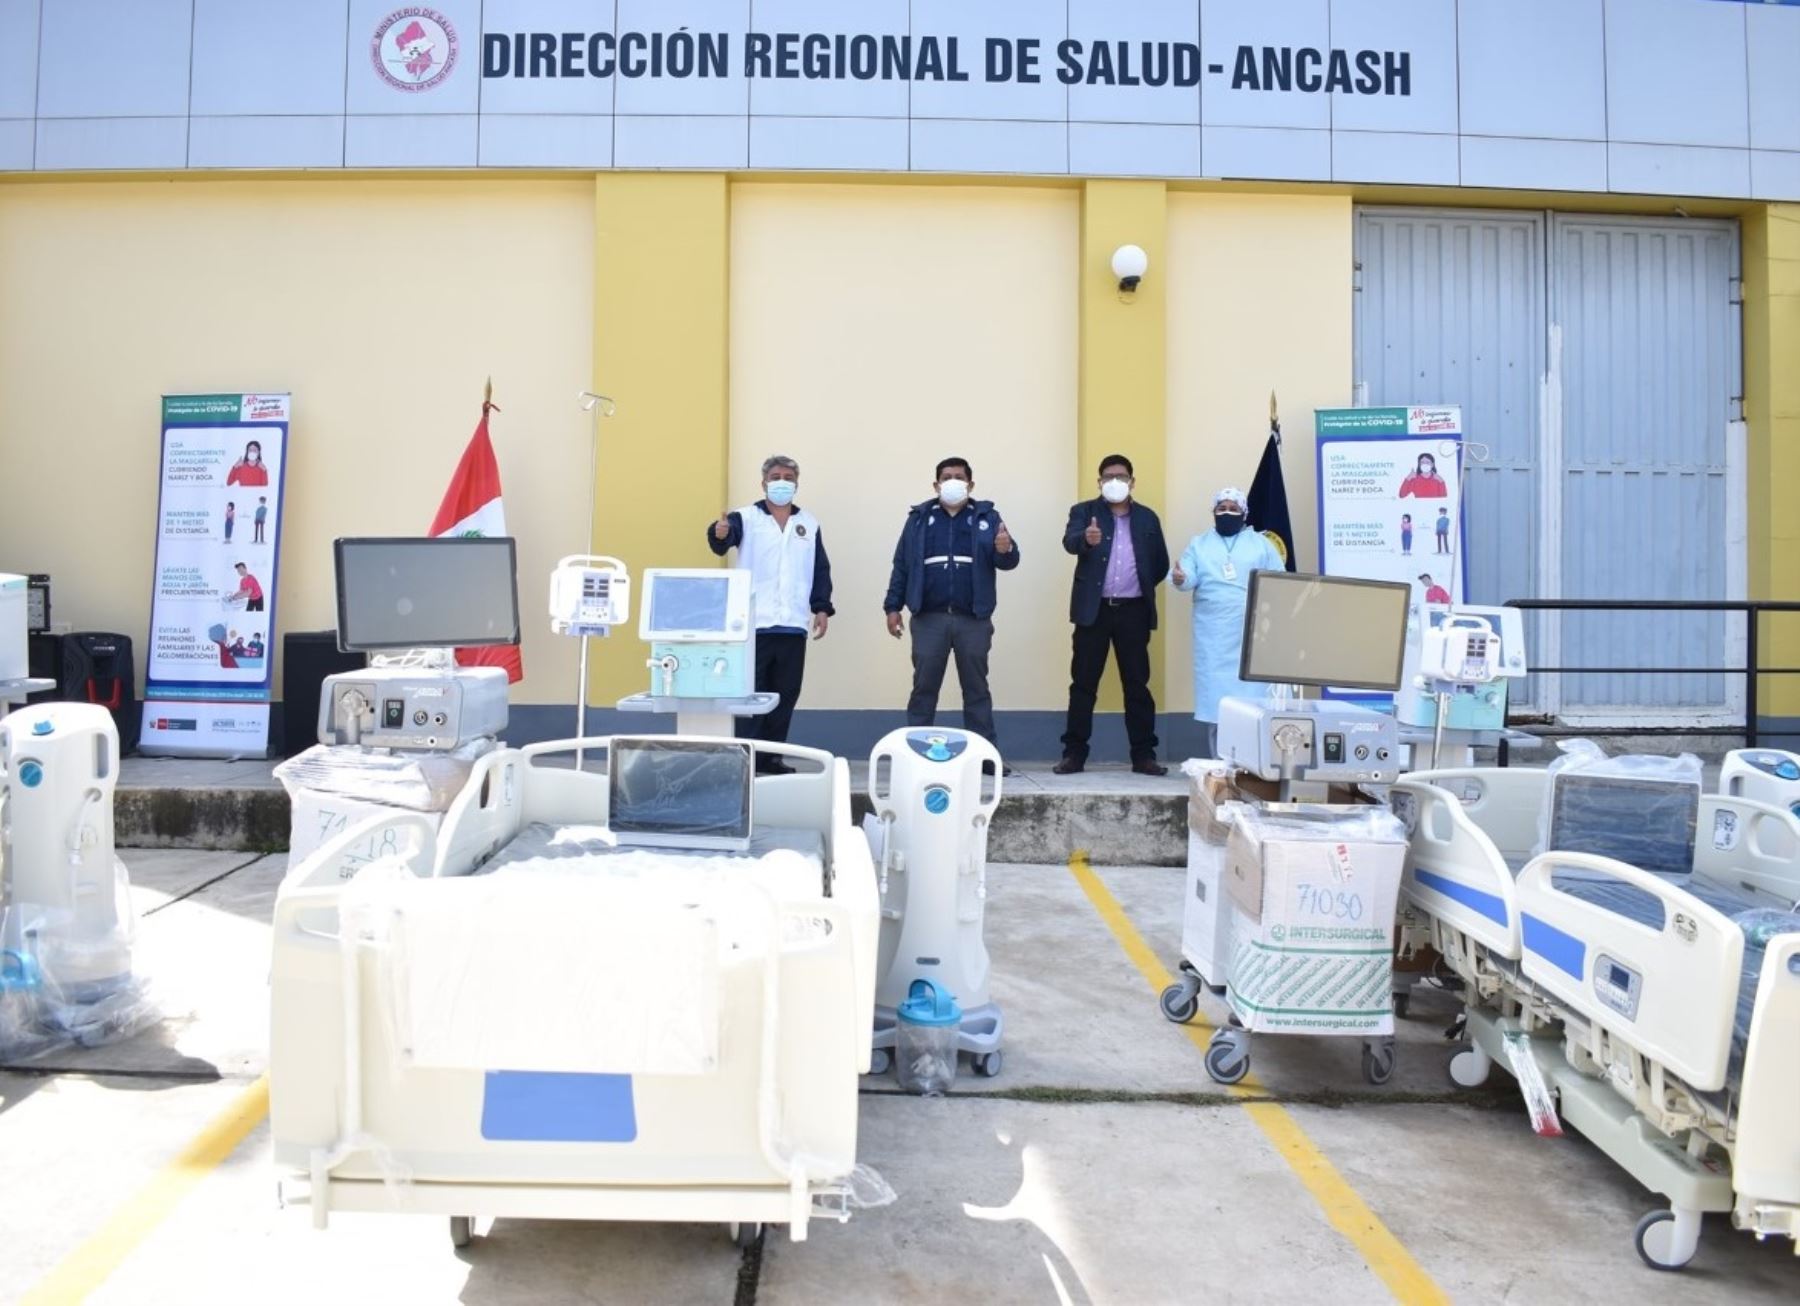 El hospital de Huaraz se refuerza con más camas UCI para enfrentar la pandemia del coronavirus covid-19. Los equipos fueron entregados por el Ministerio de Salud. Foto: ANDINA/difusión.